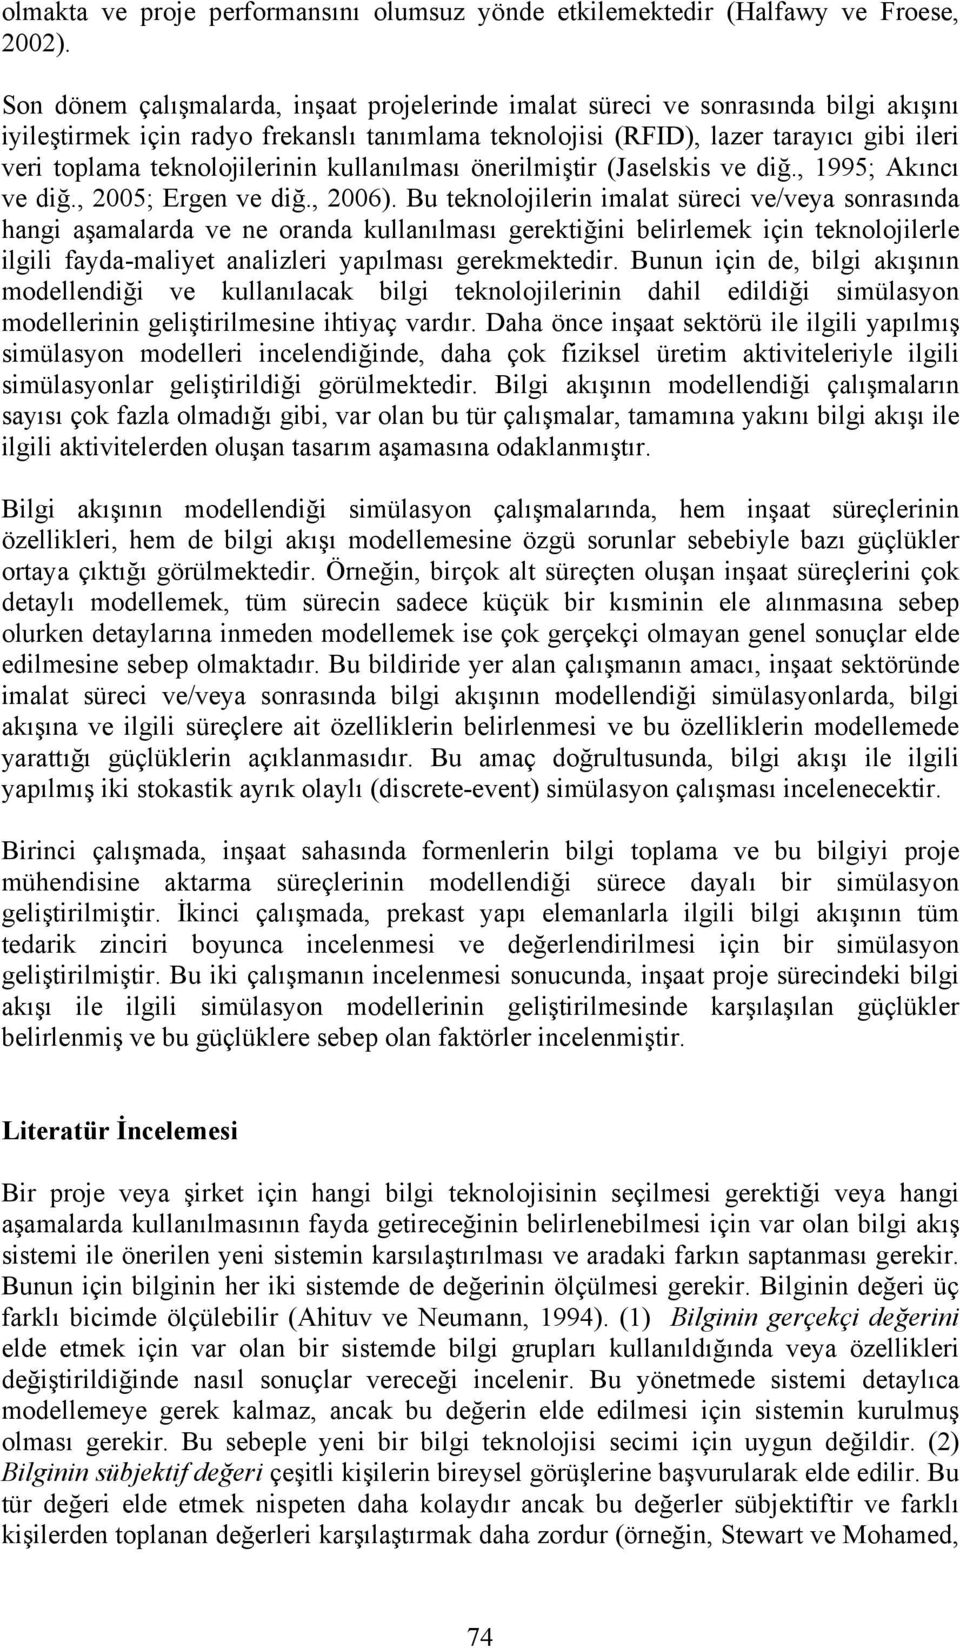 teknolojilerinin kullanılması önerilmiştir (Jaselskis ve diğ., 1995; Akıncı ve diğ., 2005; Ergen ve diğ., 2006).